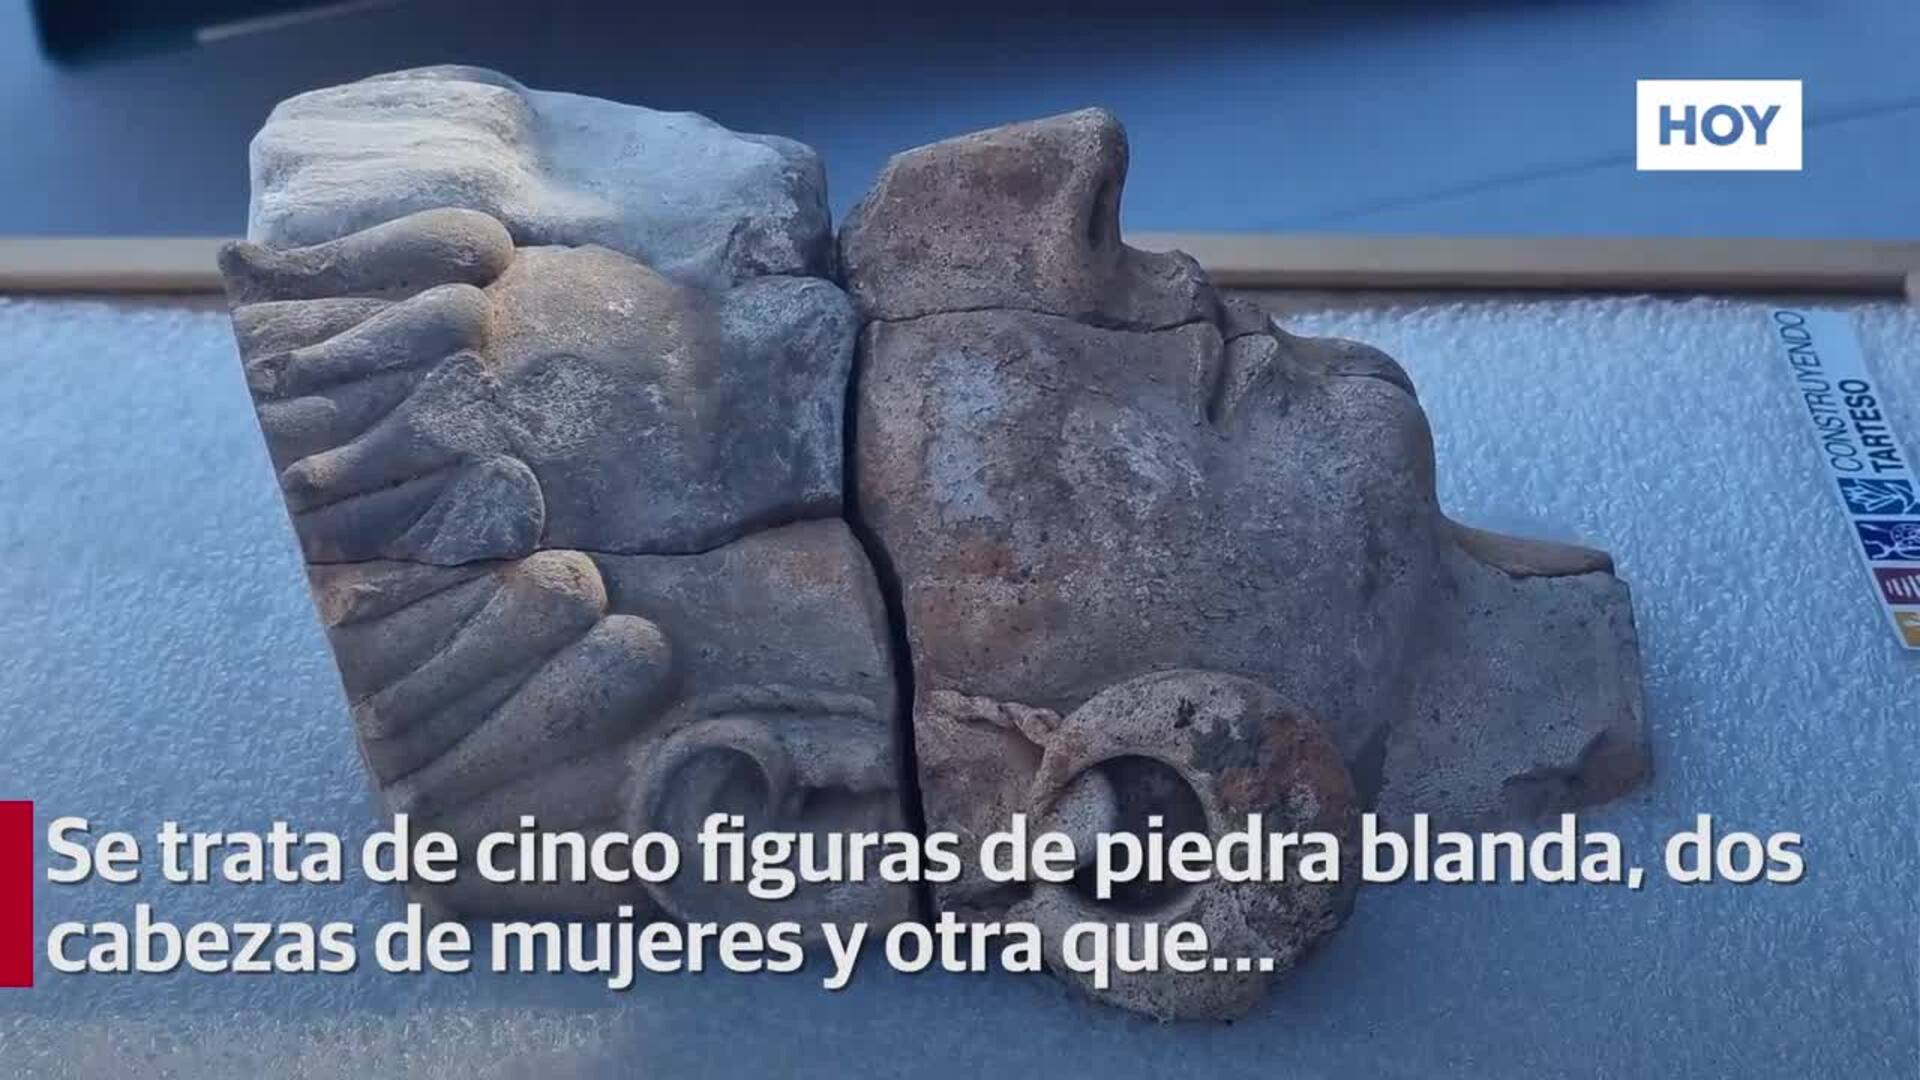 Se descubren los primeros rostros humanos de la cultura tartésica en Extremadura